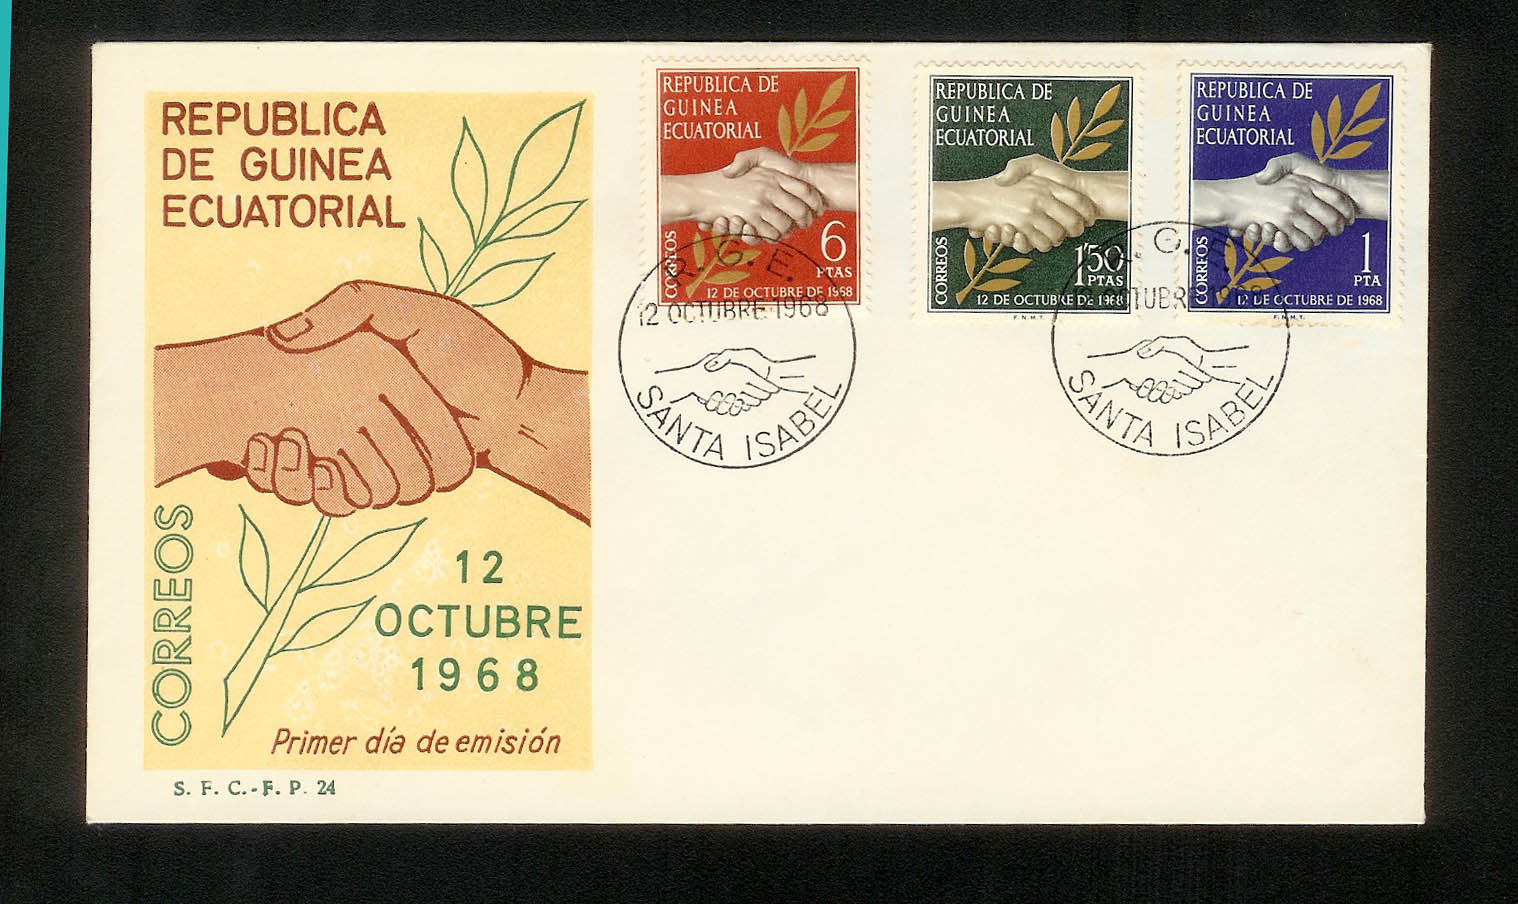 SOBRE CARTA. REPUBLICA DE GUINEA ECUATORIAL